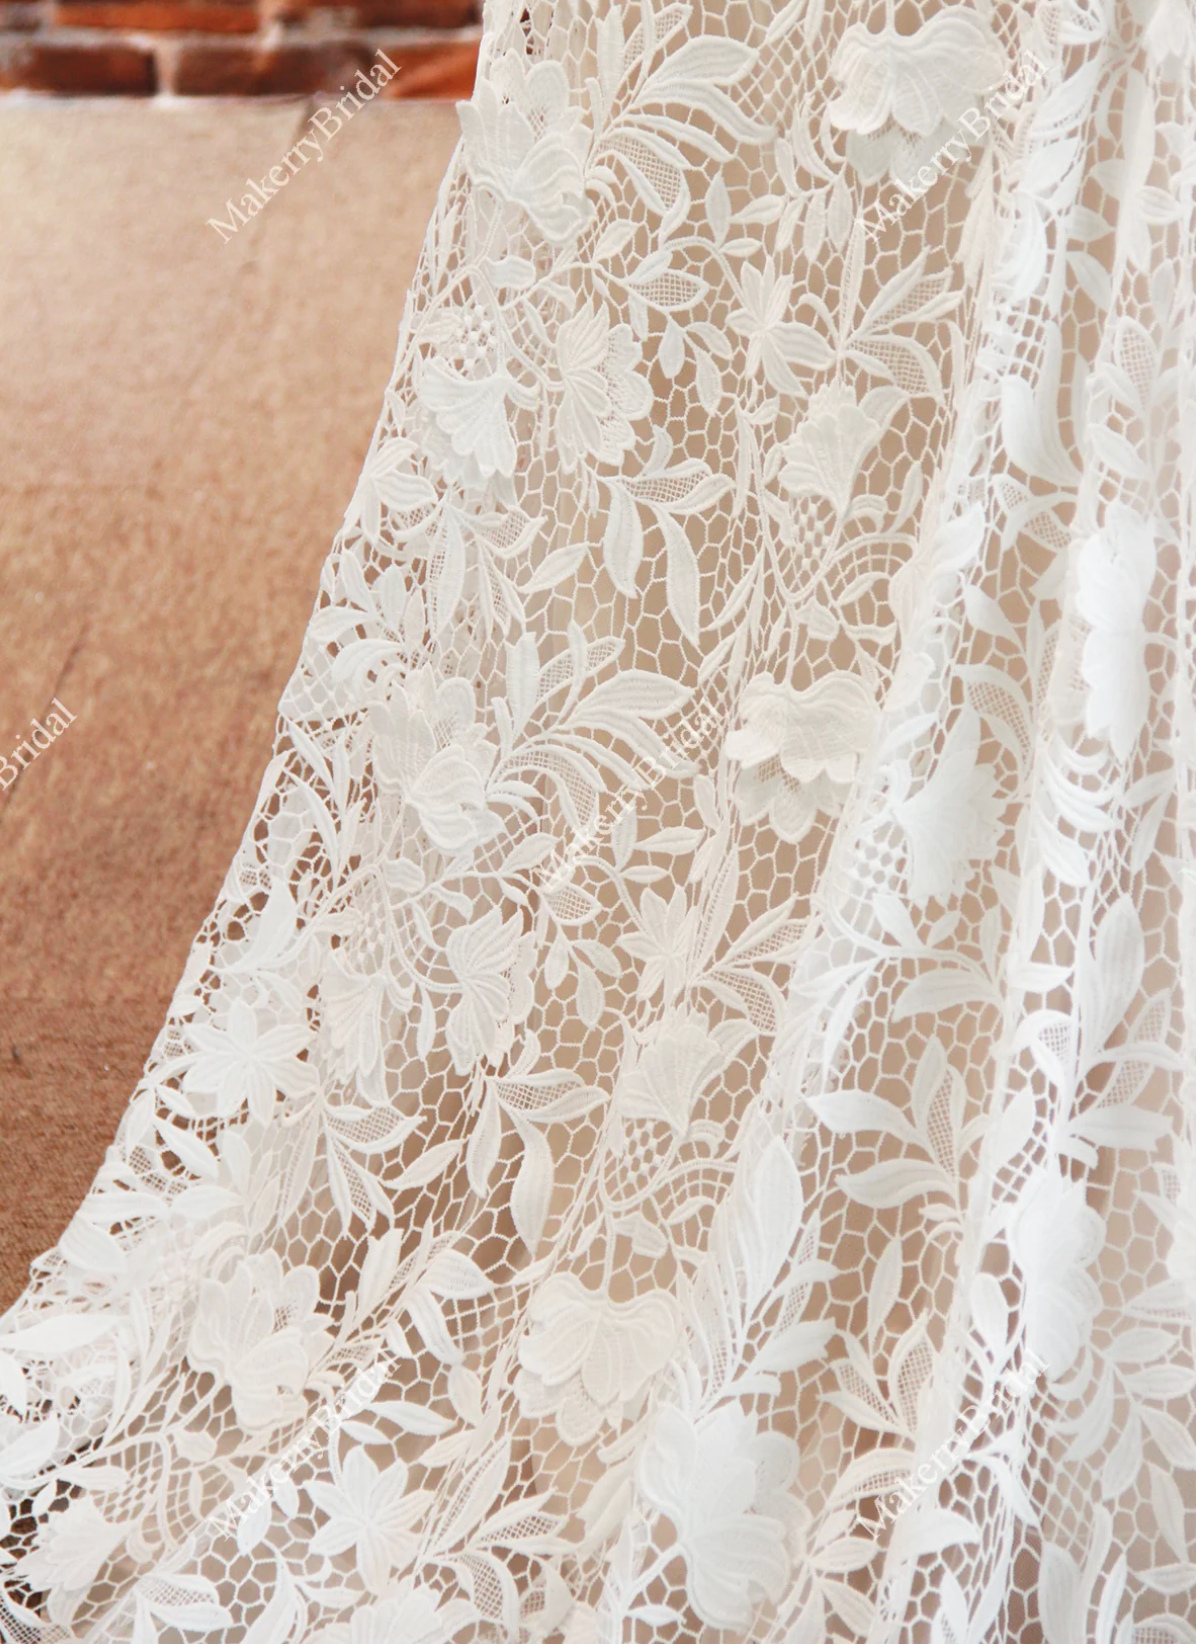 Elegant Three-Dimensional Floral Lace Wedding Dress With Bateau Neckline